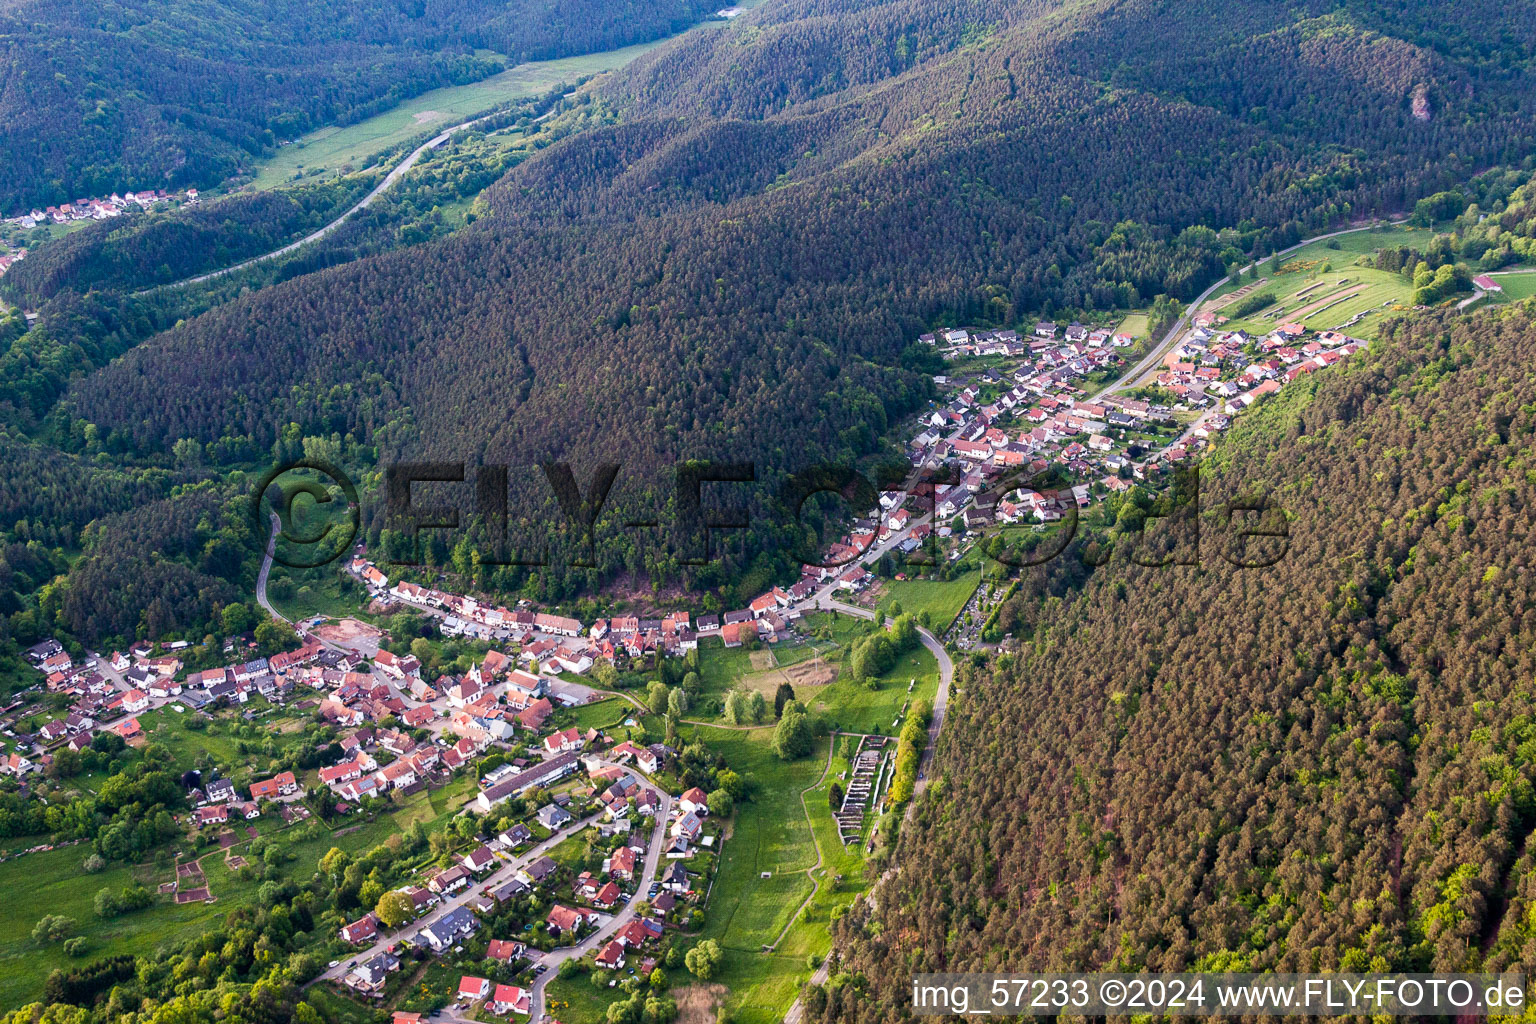 Luftbild von Dorf - Ansicht am Rande von landwirtschaftlichen Feldern und Nutzflächen in Spirkelbach im Bundesland Rheinland-Pfalz, Deutschland